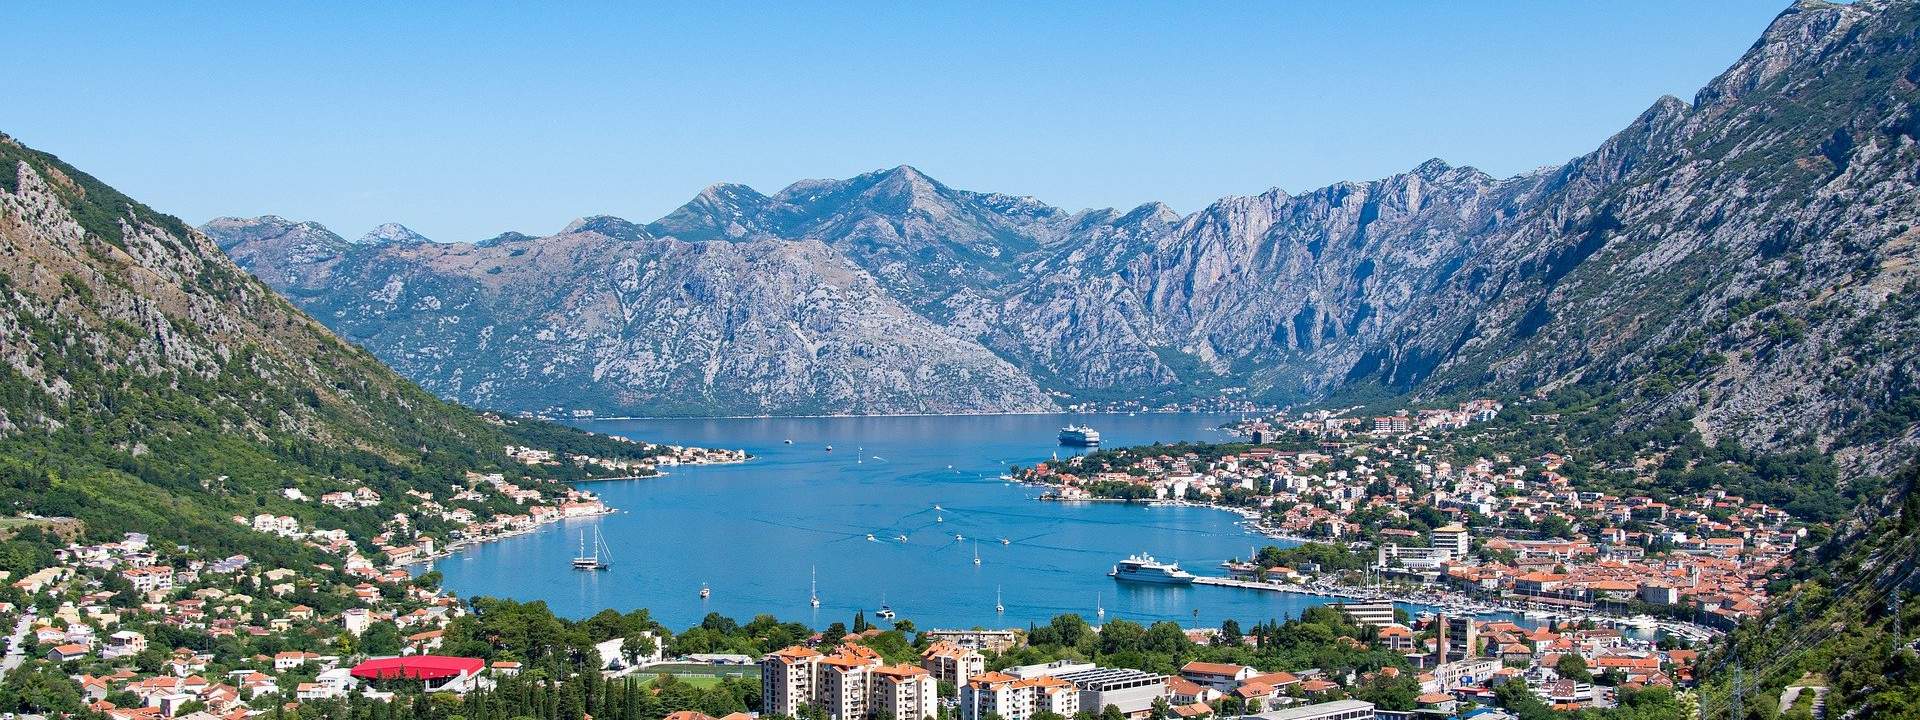 Le Monténégro, des Bouches de Kotor à la côte Adriatique en goélette